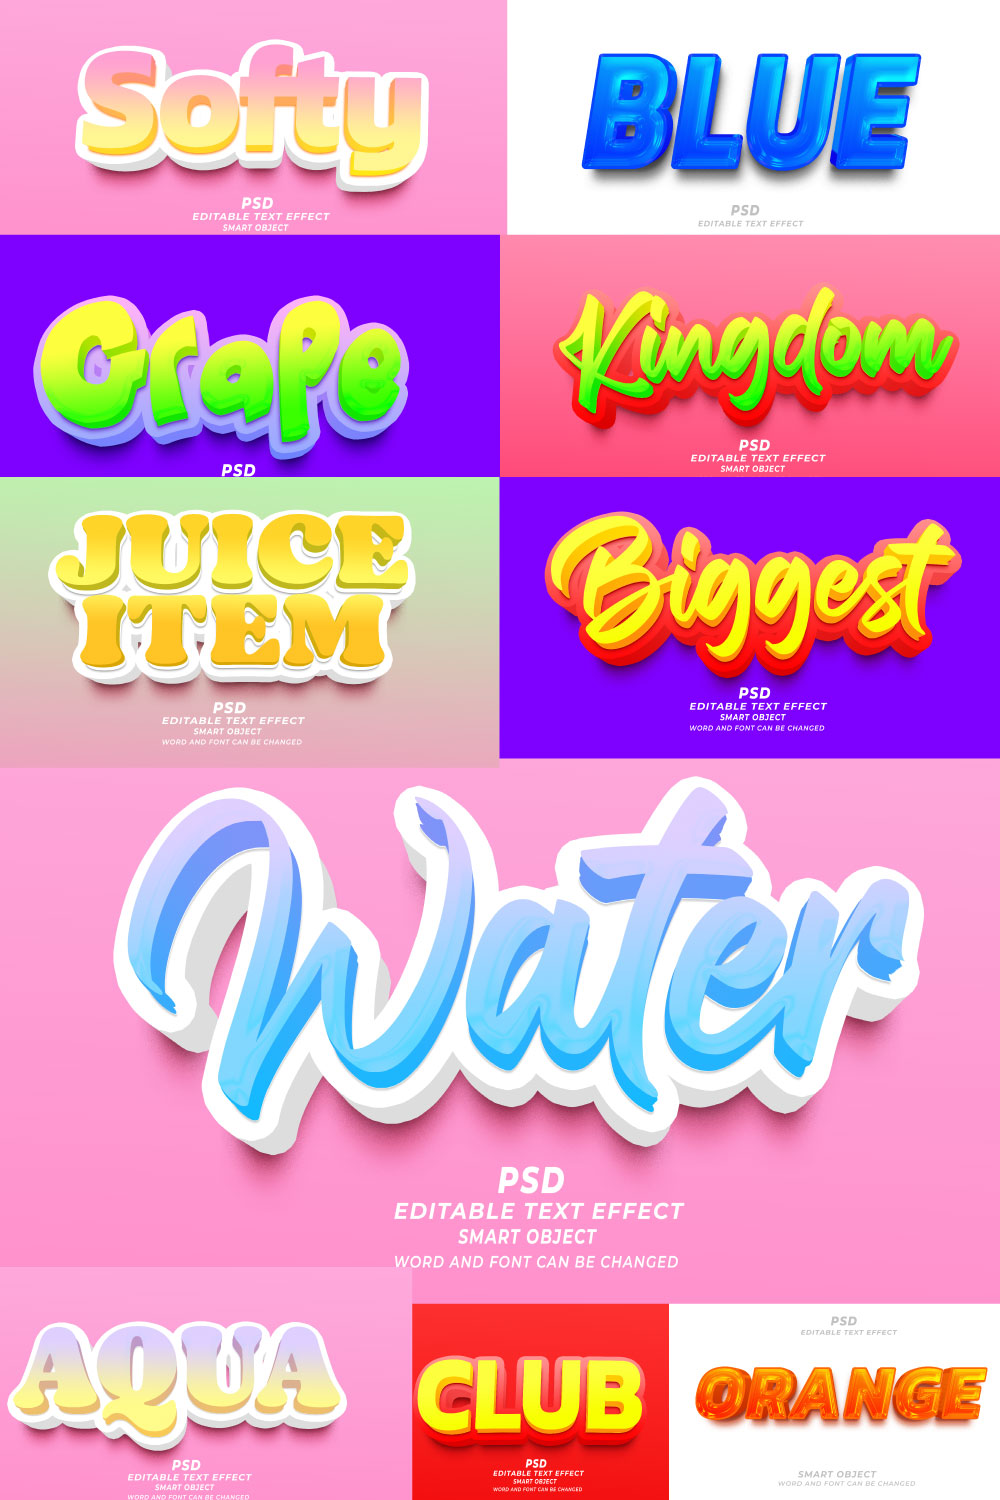 Best PSD bundle 3D editable text effect pinterest preview image.